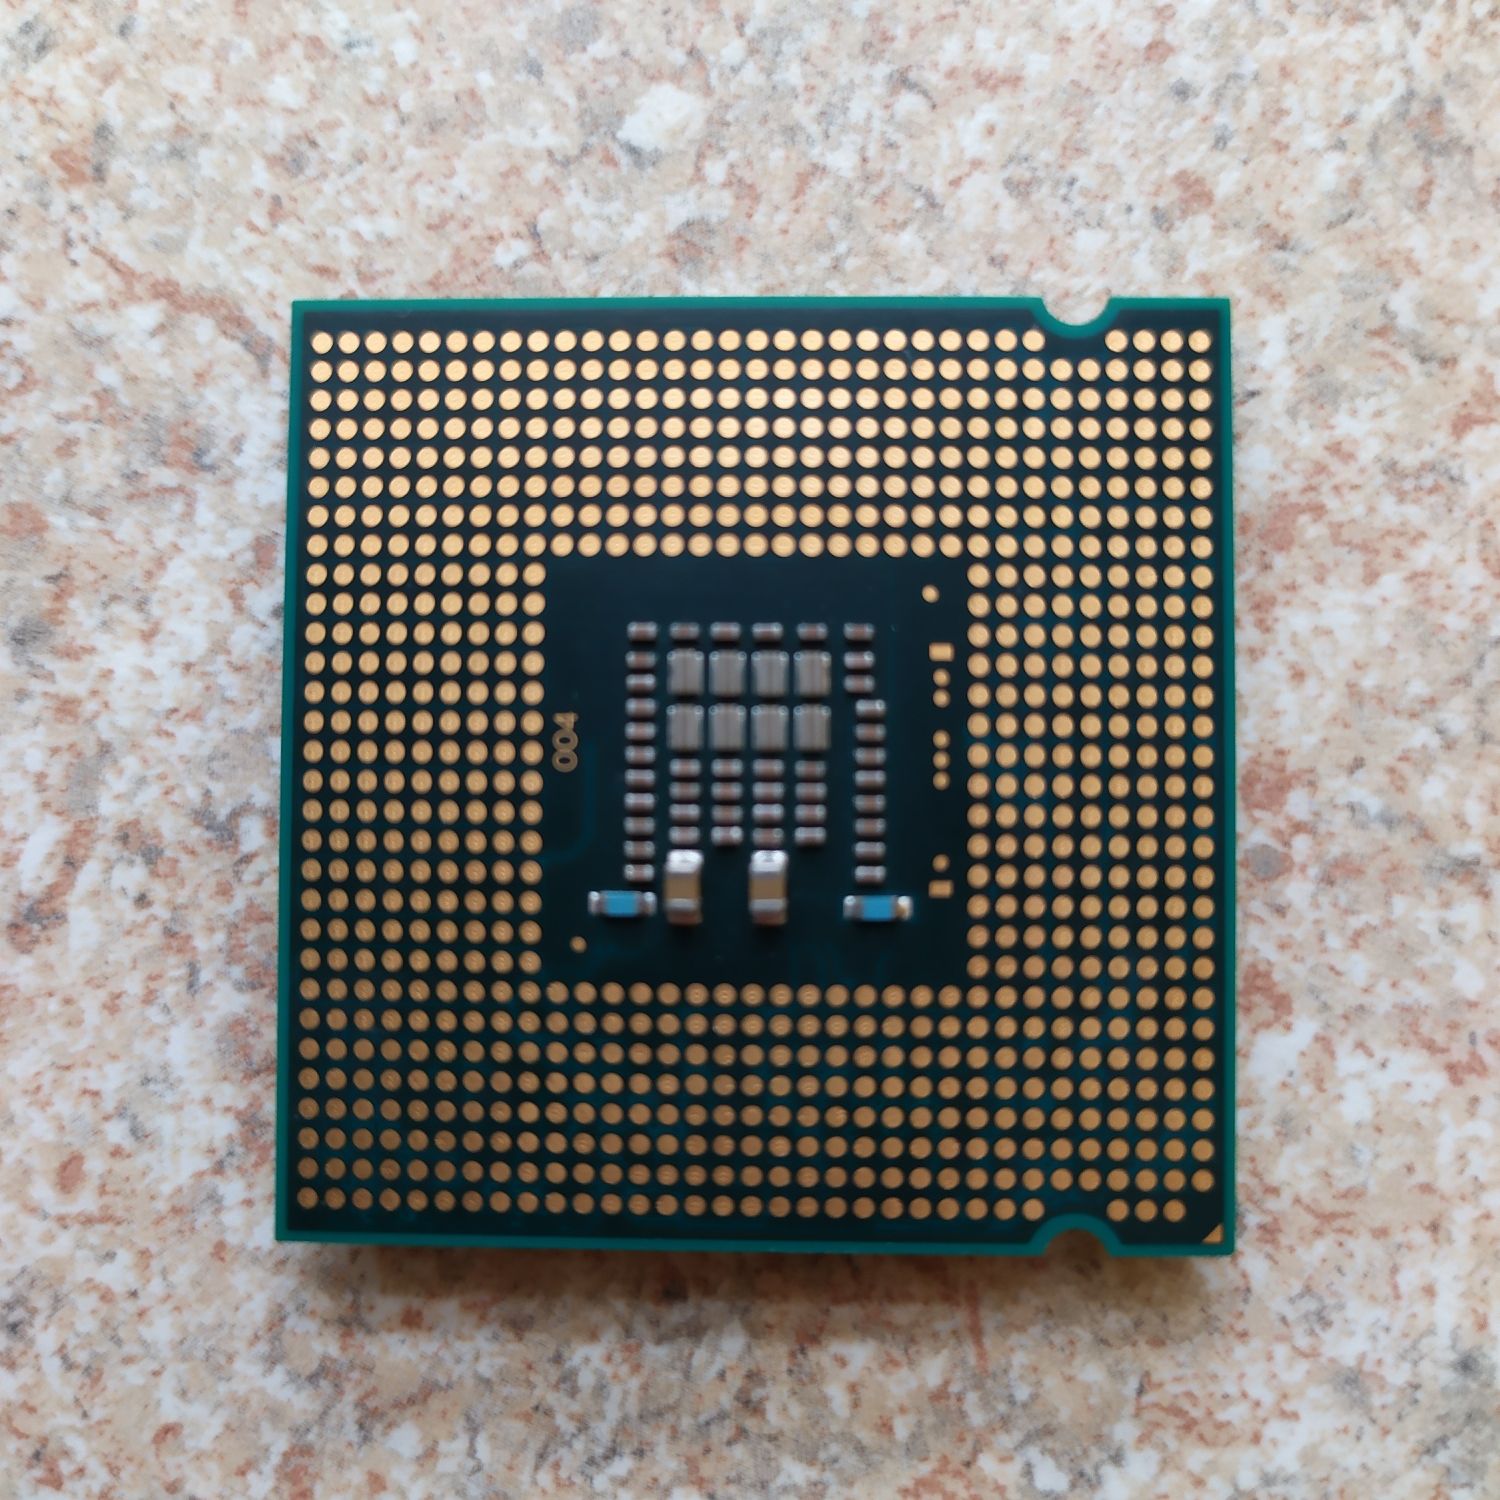 Процессор двухядерний Інтел Пентіум Е5300 Dual Core